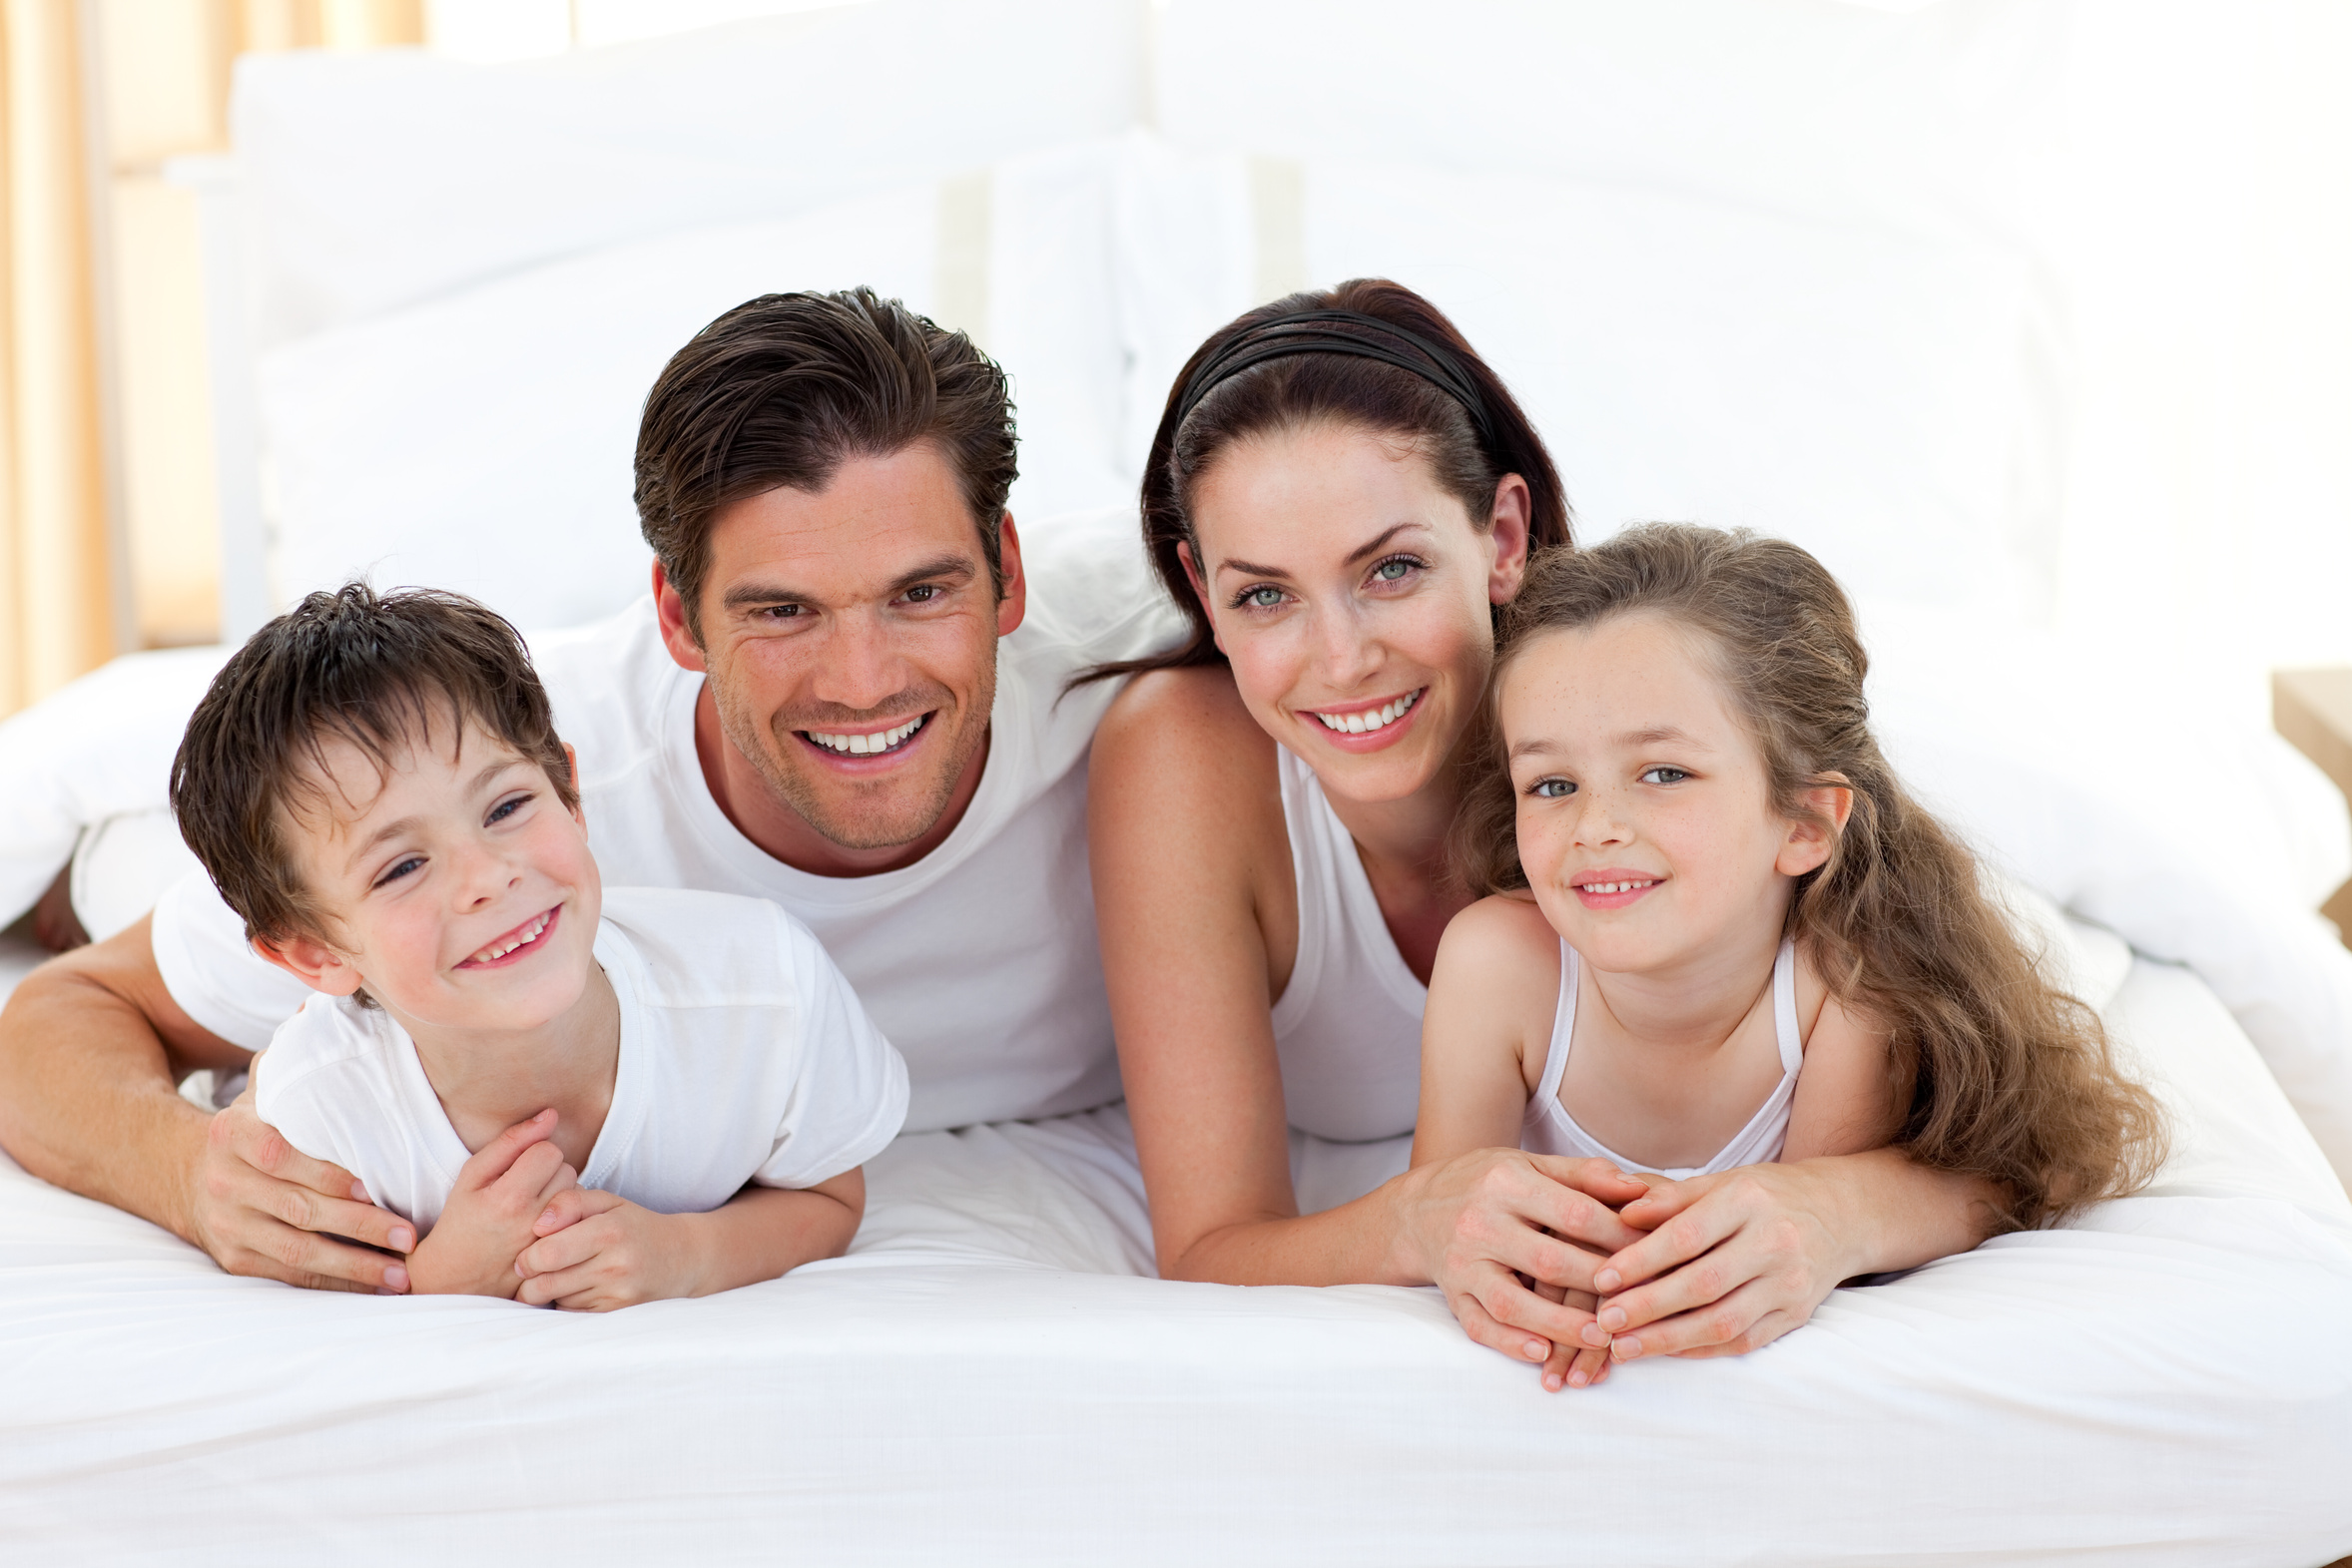 Реклама мамы папы. Счастливая семья. Семья двое детей. Семья на кровати. Семья улыбка.